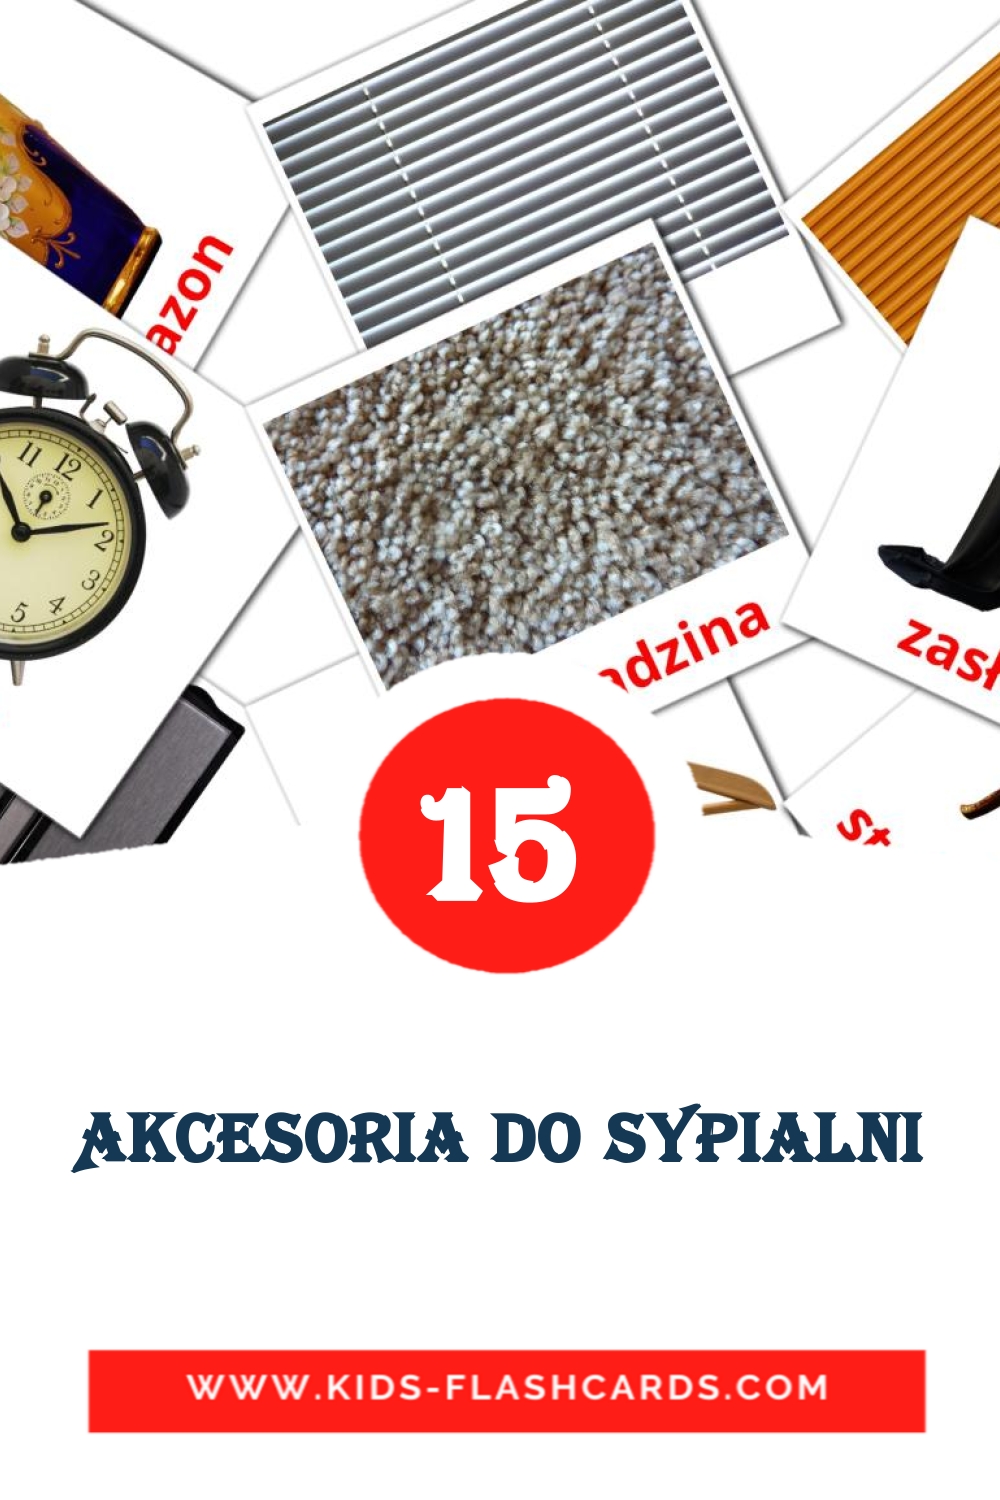 15 Akcesoria do Sypialni Picture Cards for Kindergarden in polish